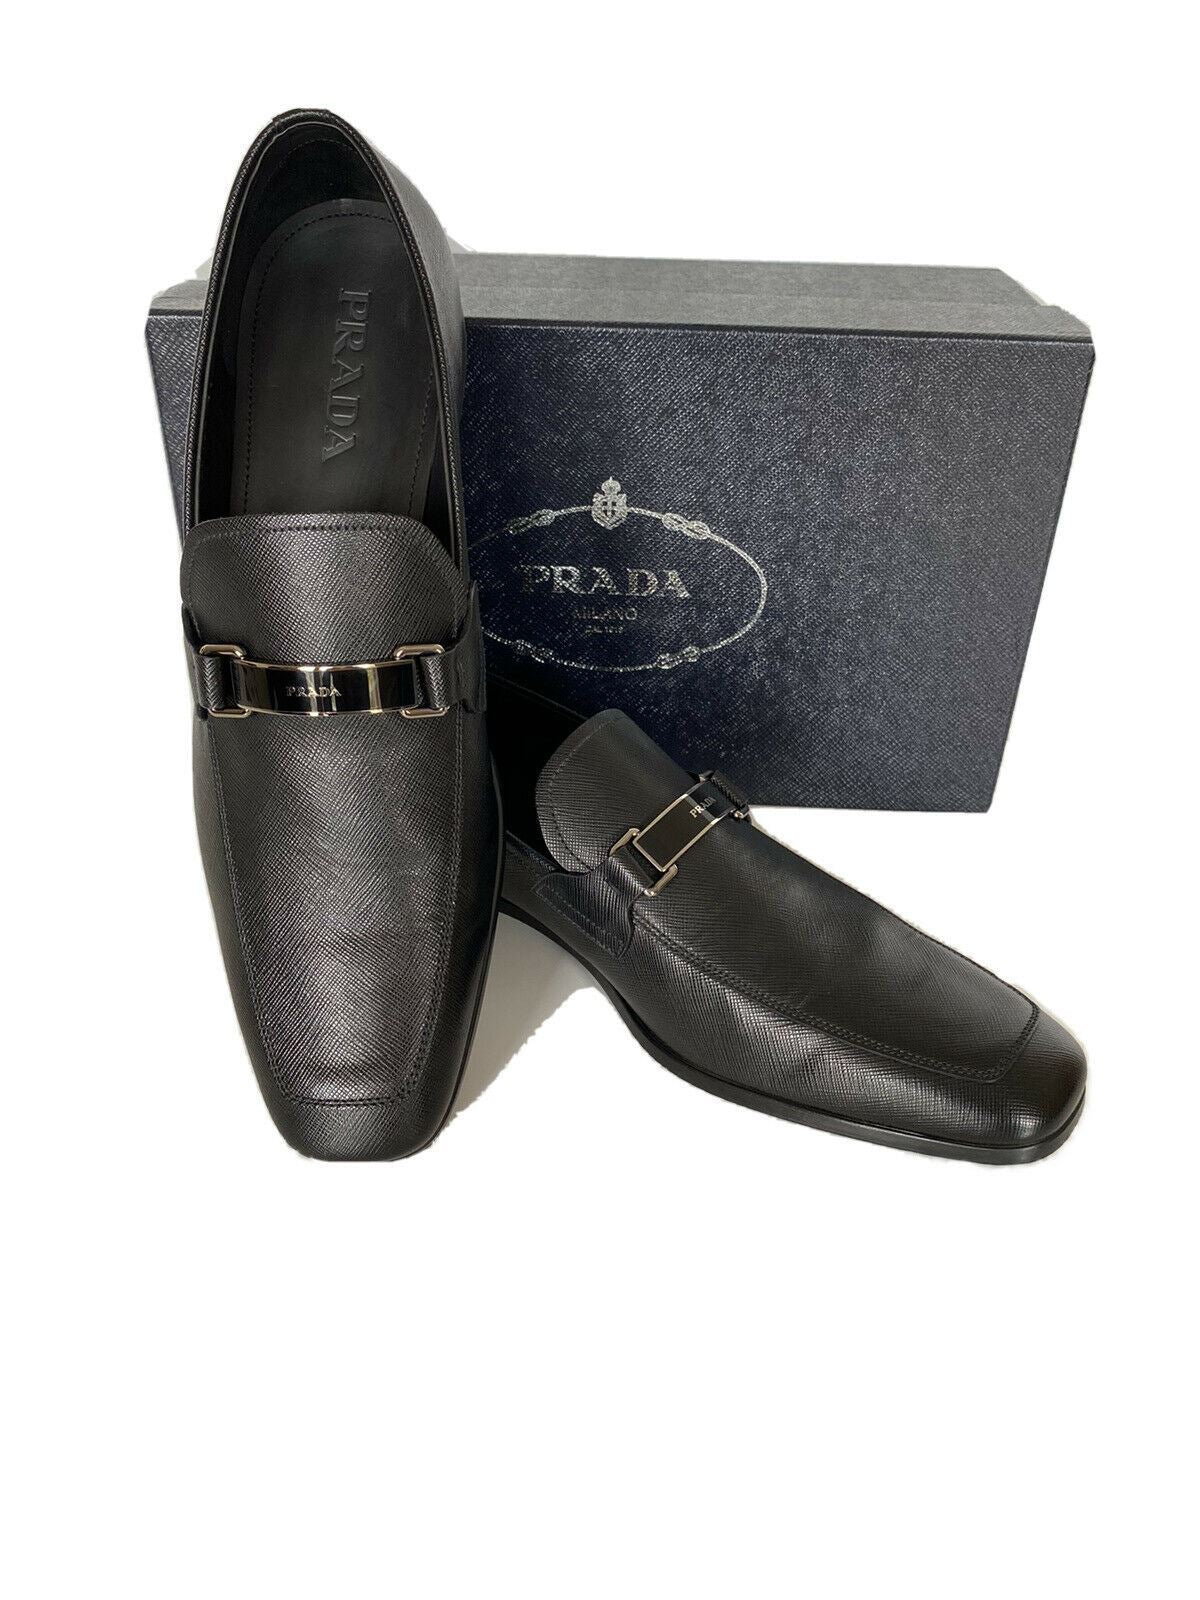 NIB PRADA Мужские черные кожаные туфли 12 США (Prada 11) 2DC135 Италия 